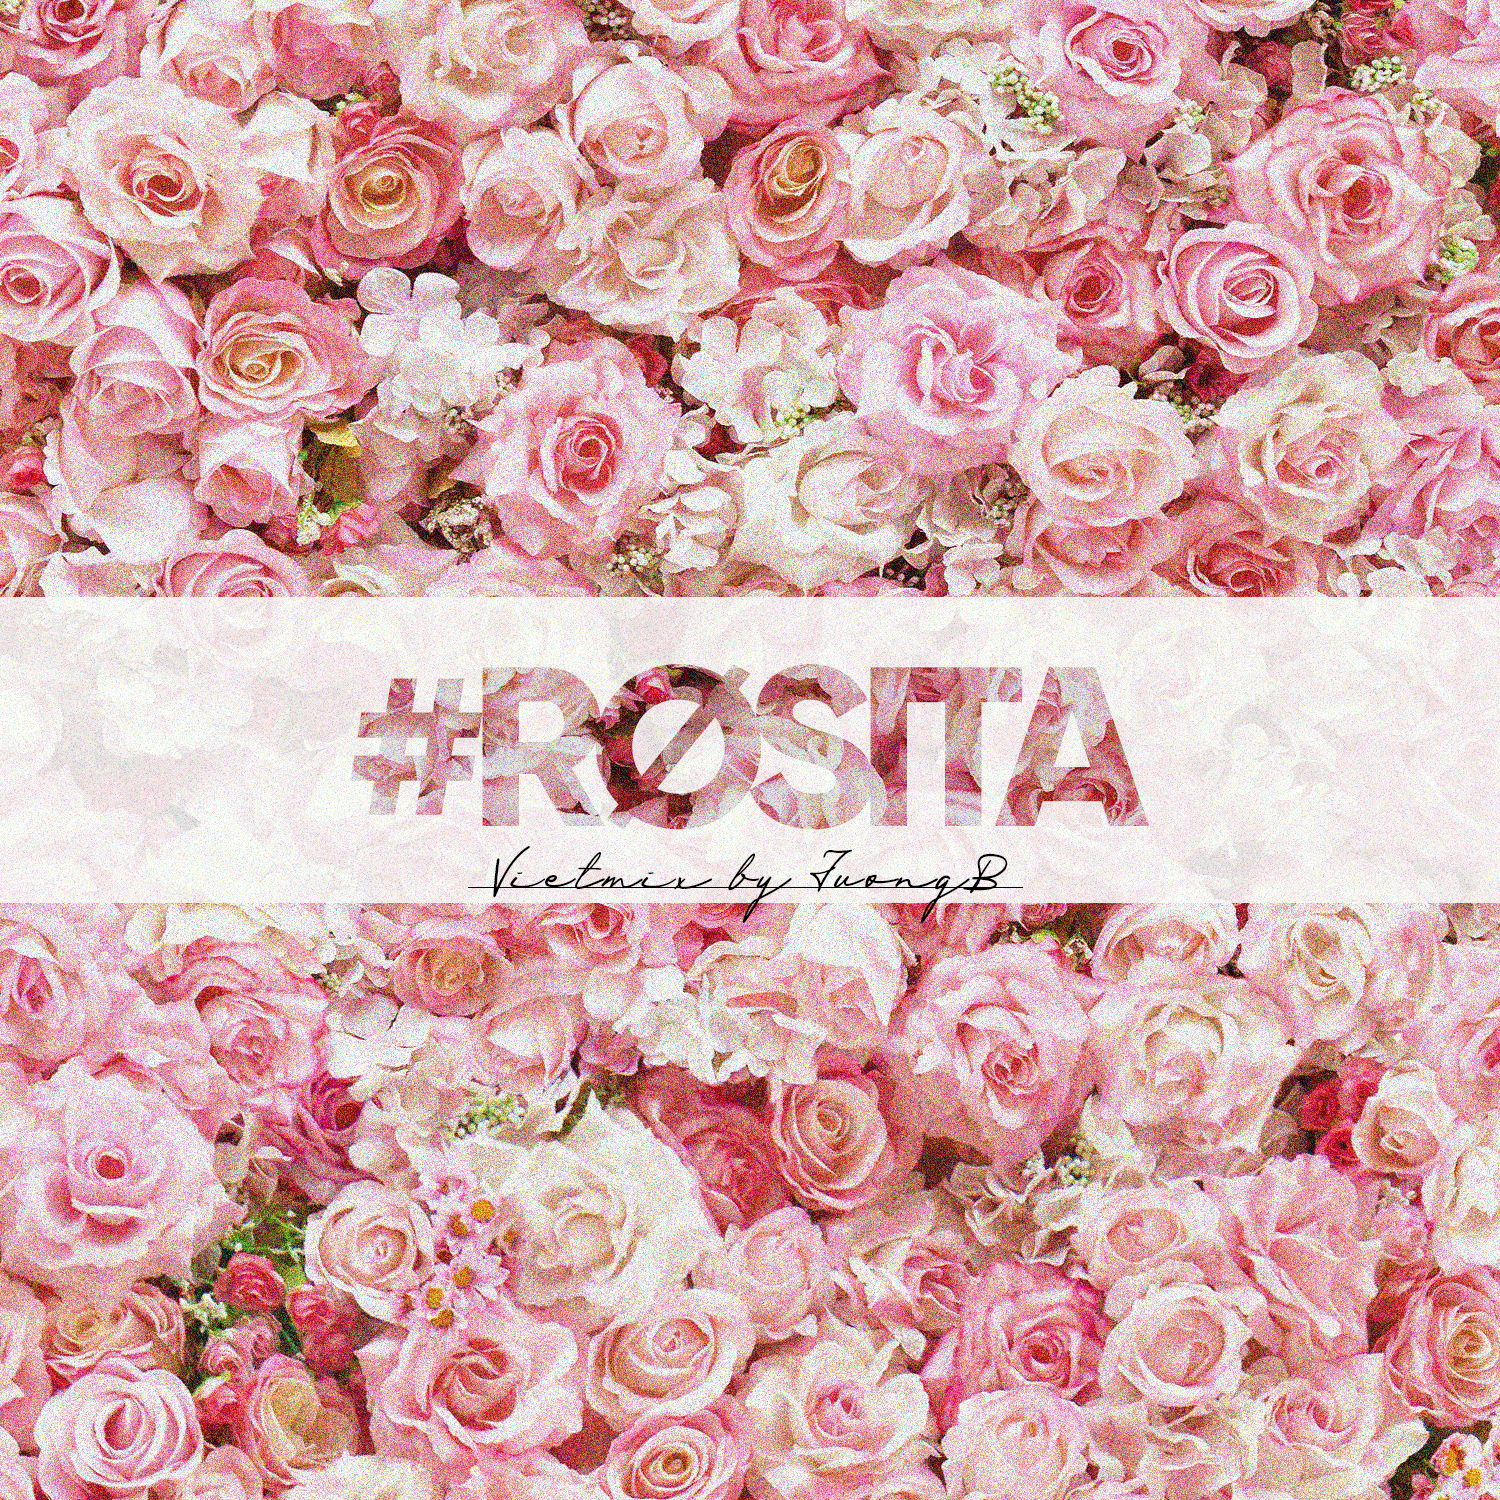 Descargar #Rosita - Vietmix By JuongB